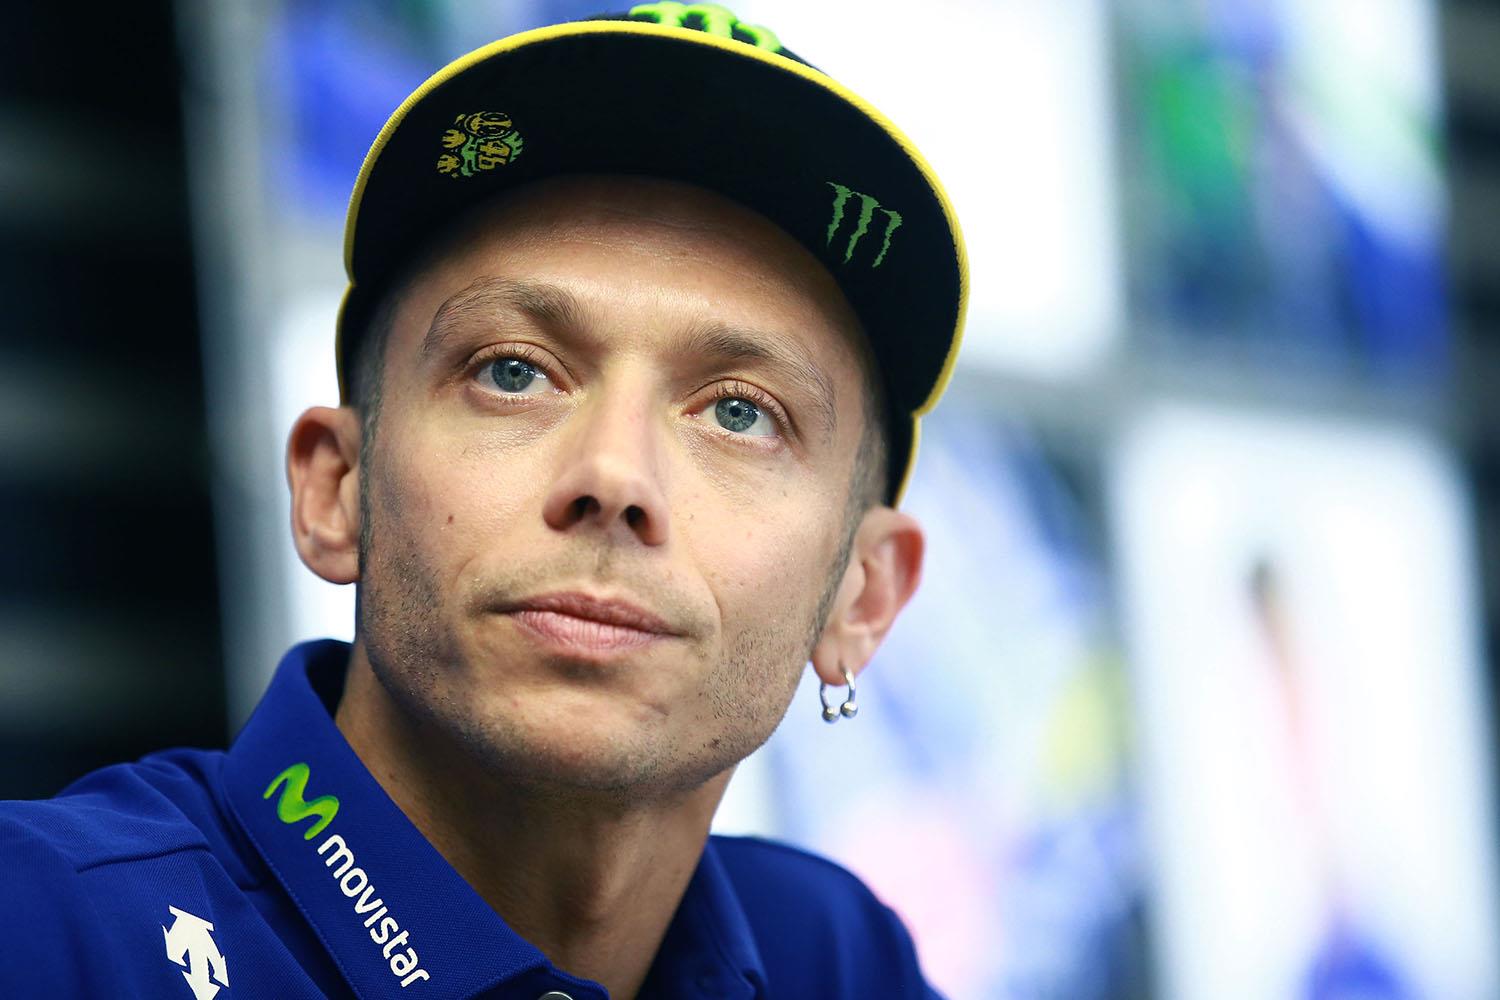 MotoGP: Rossi explains enduro crash